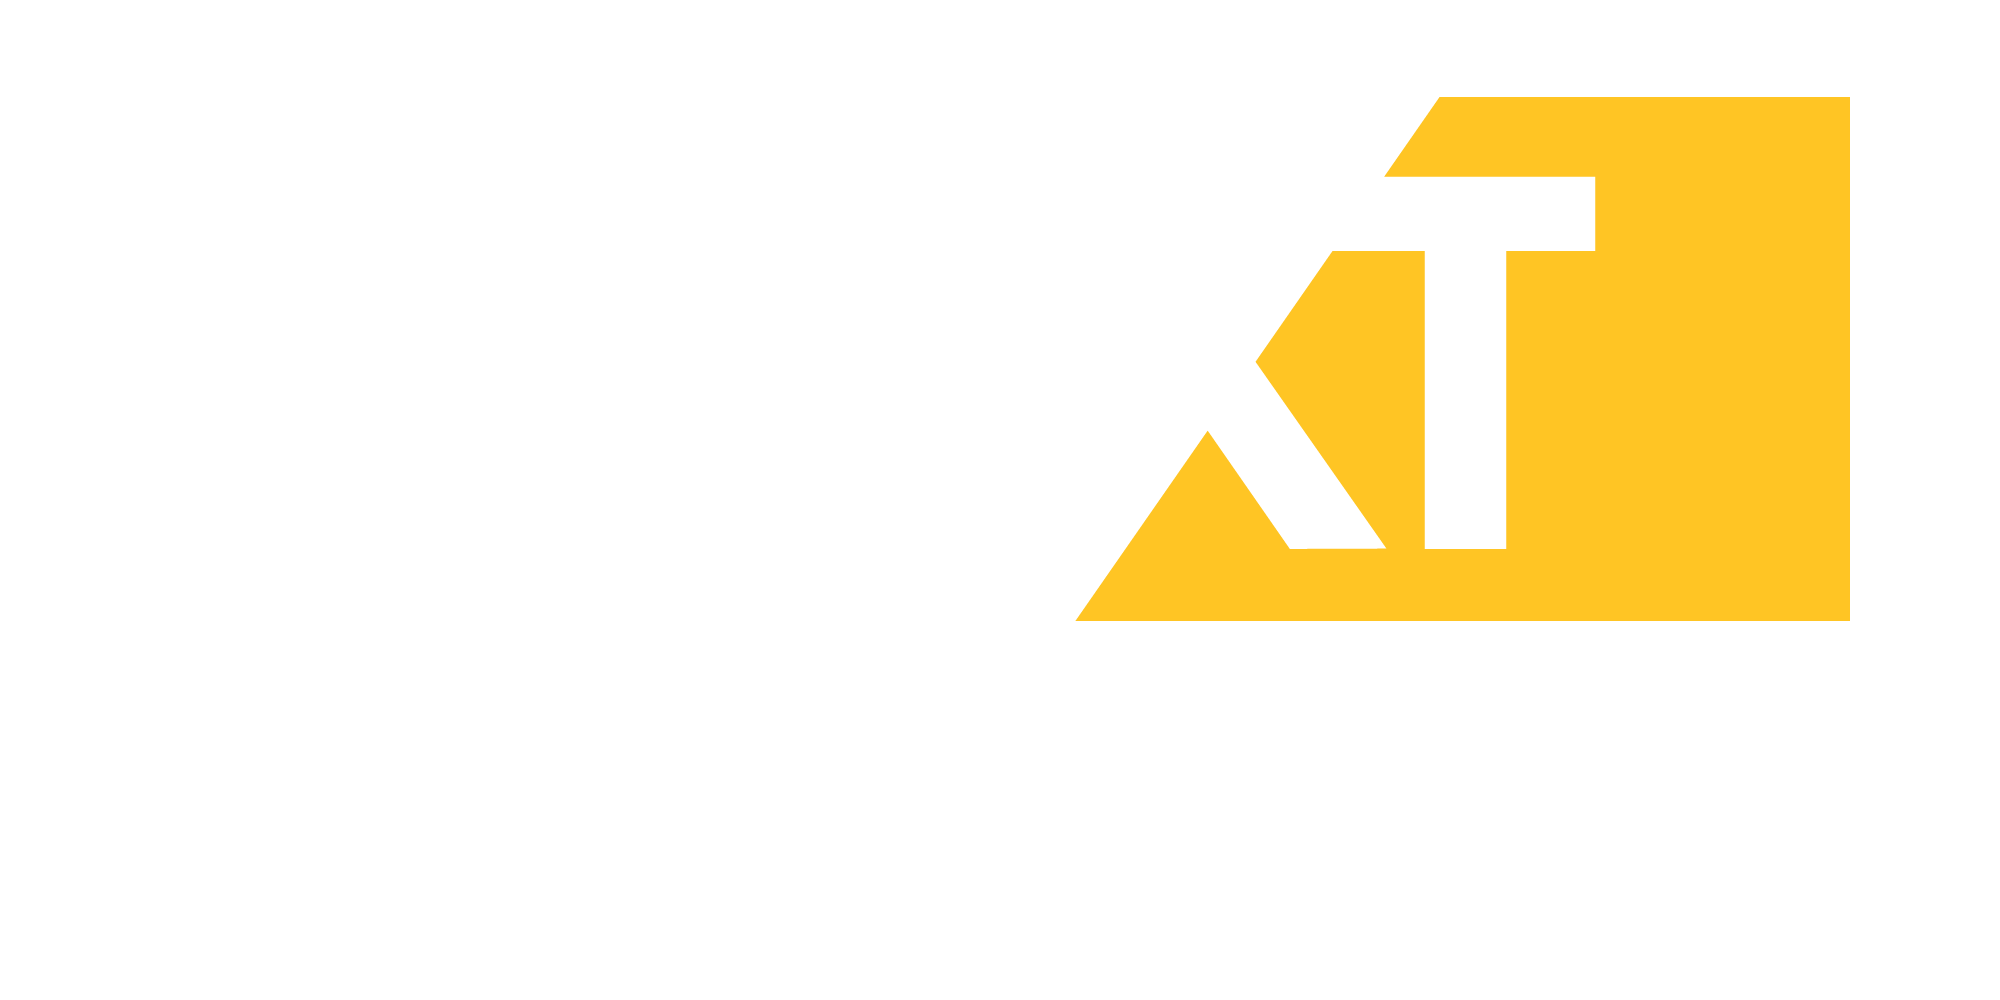 Nextlogistic logo white and yellow